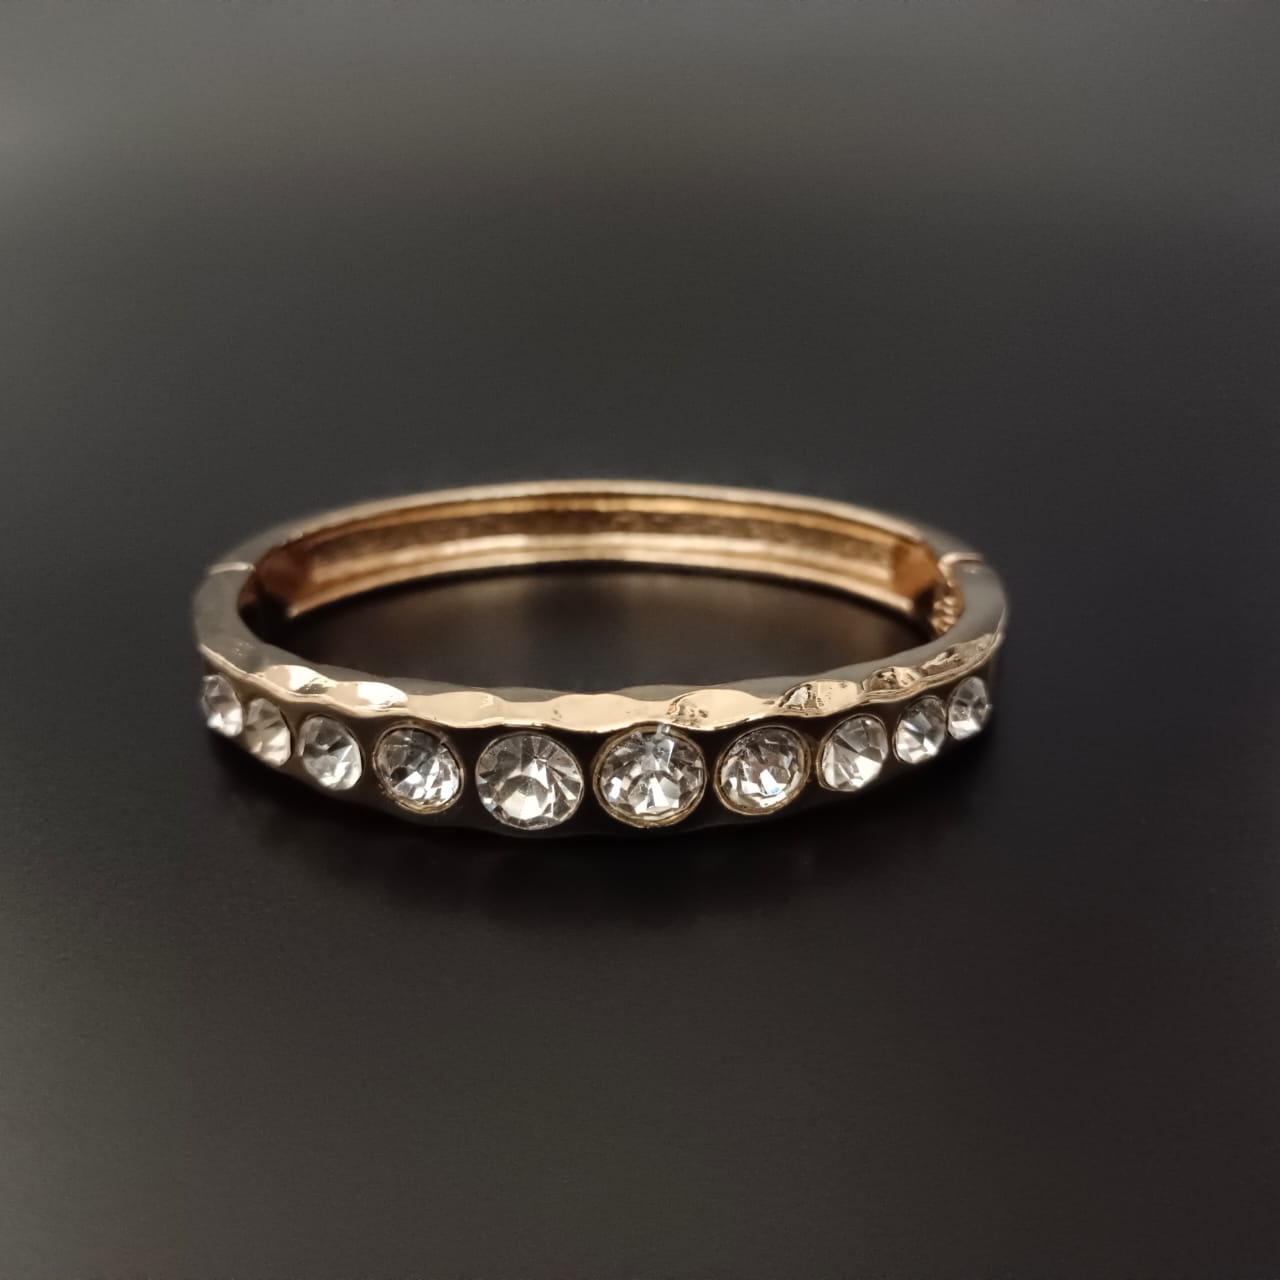 New Round Diamond Design Golden Bracelet For Women and Girl